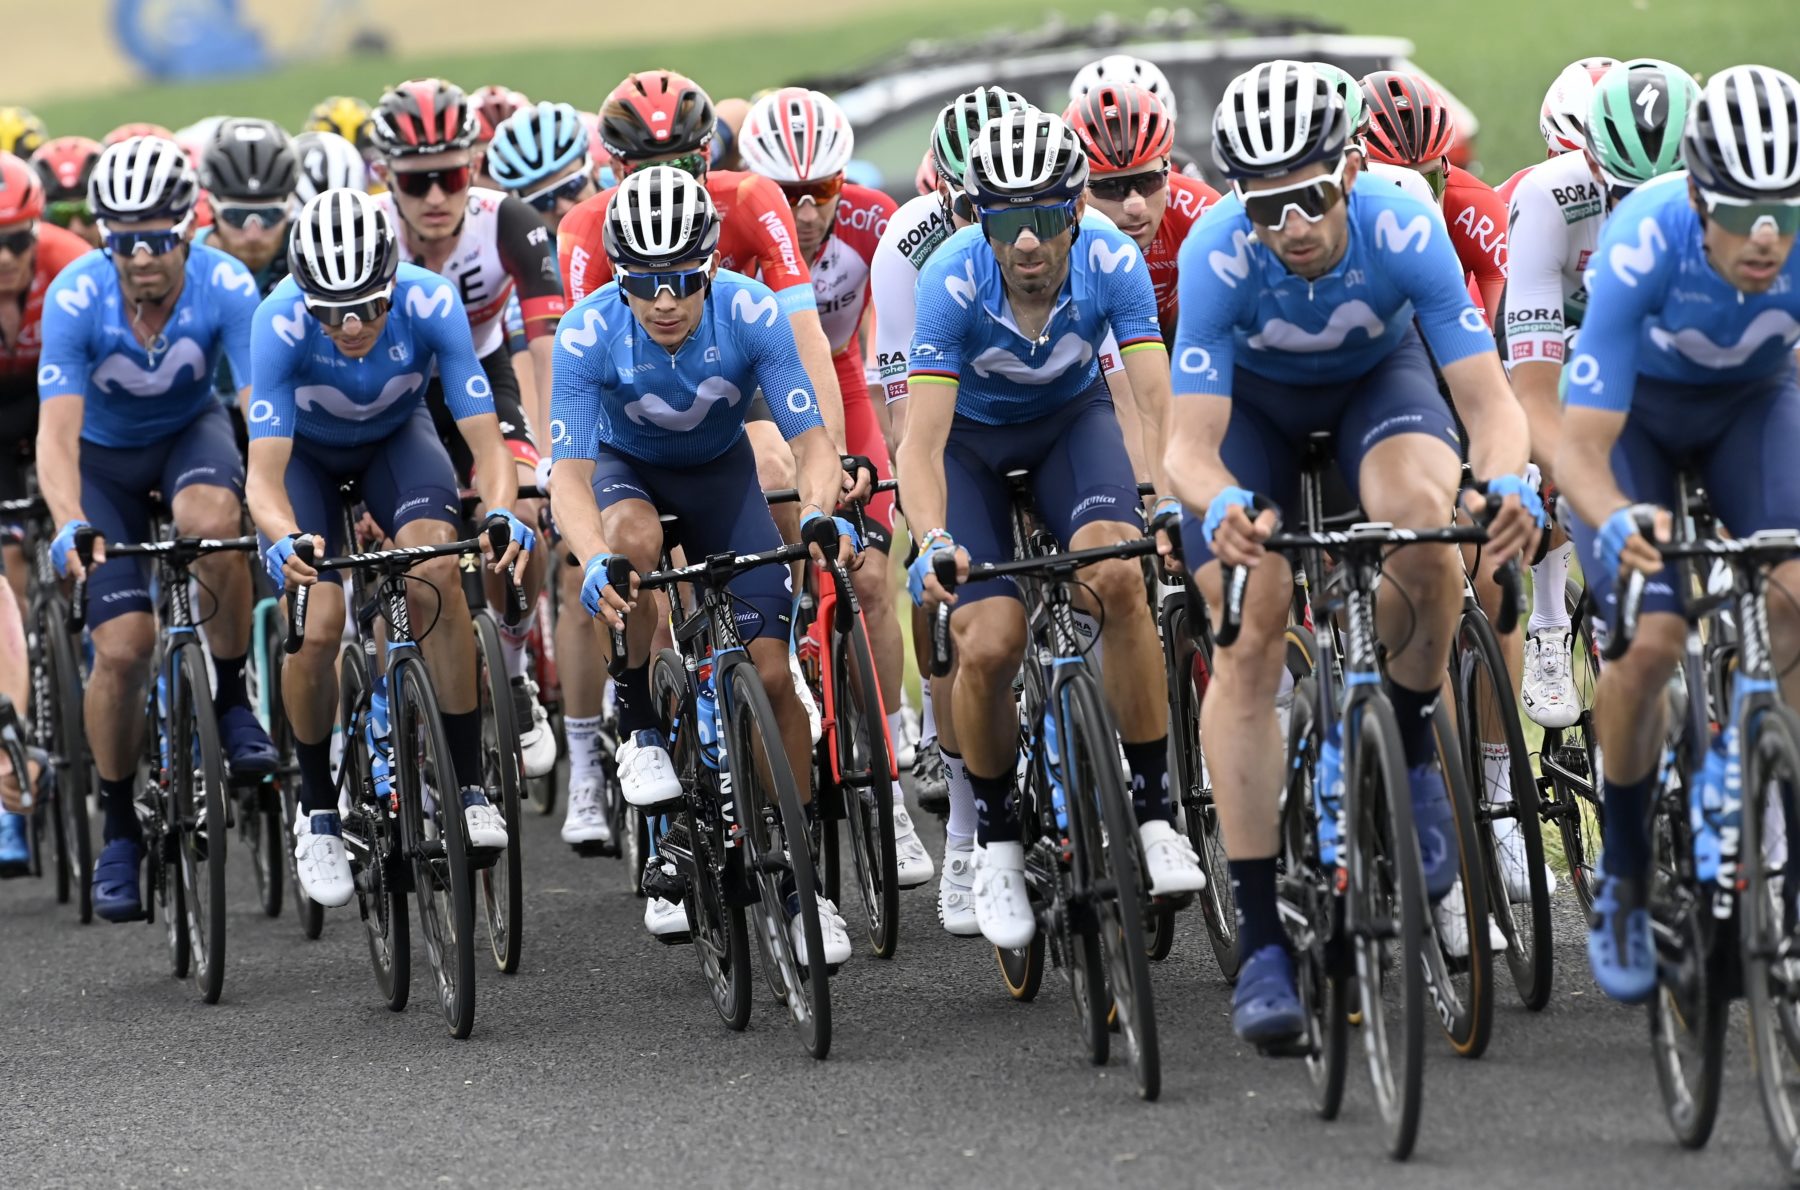 News' image‛Arranque con aplomo en el Dauphiné; Valverde, 10º en Issoire’